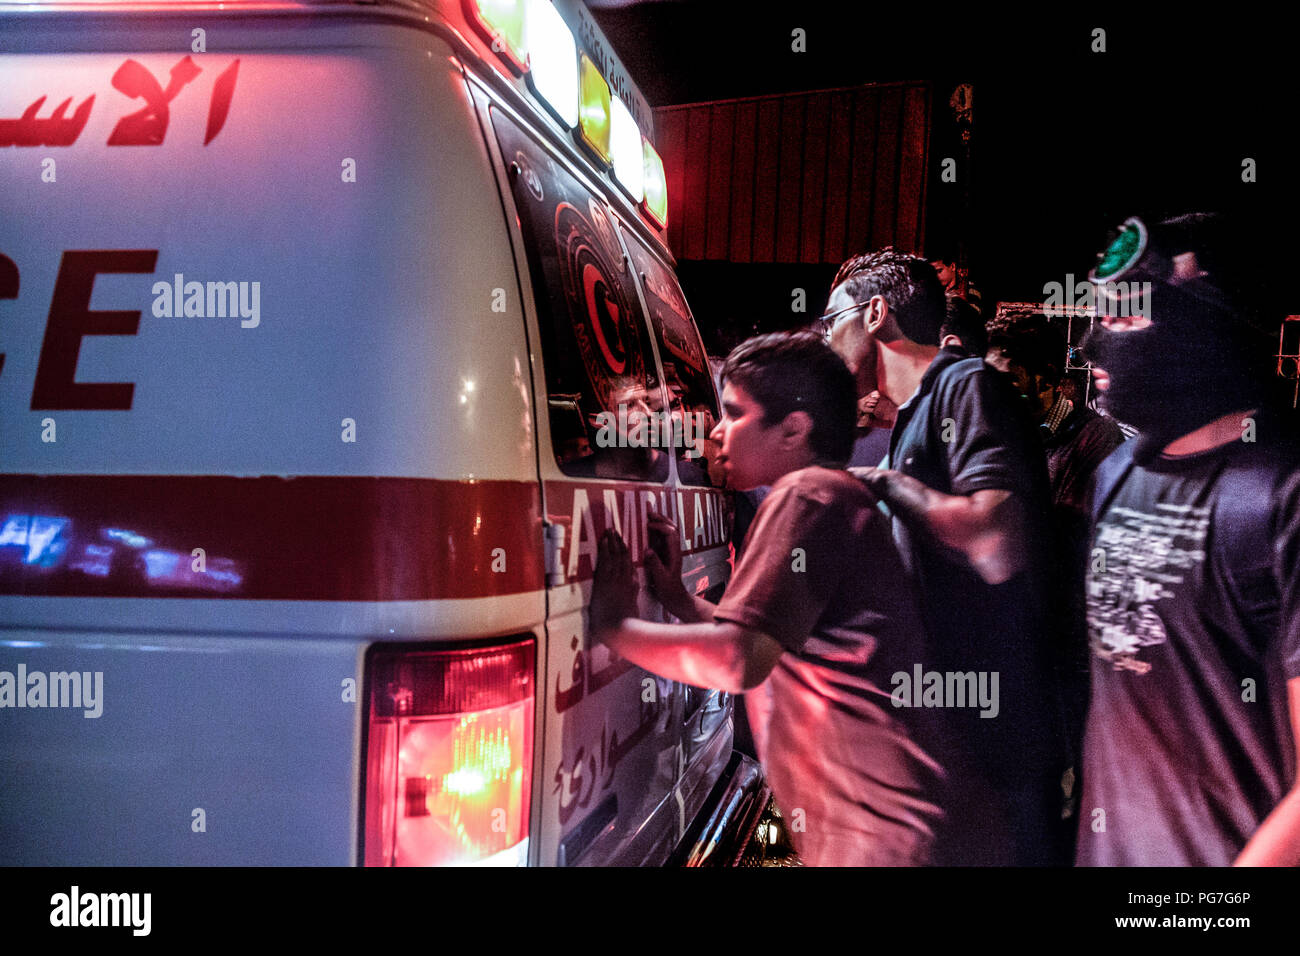 Belén, Palestina, 23 de julio de 2014: la juventud palestina está buscando en una ambulancia de la media luna roja buscando víctimas en Belén durante la noche motín Foto de stock